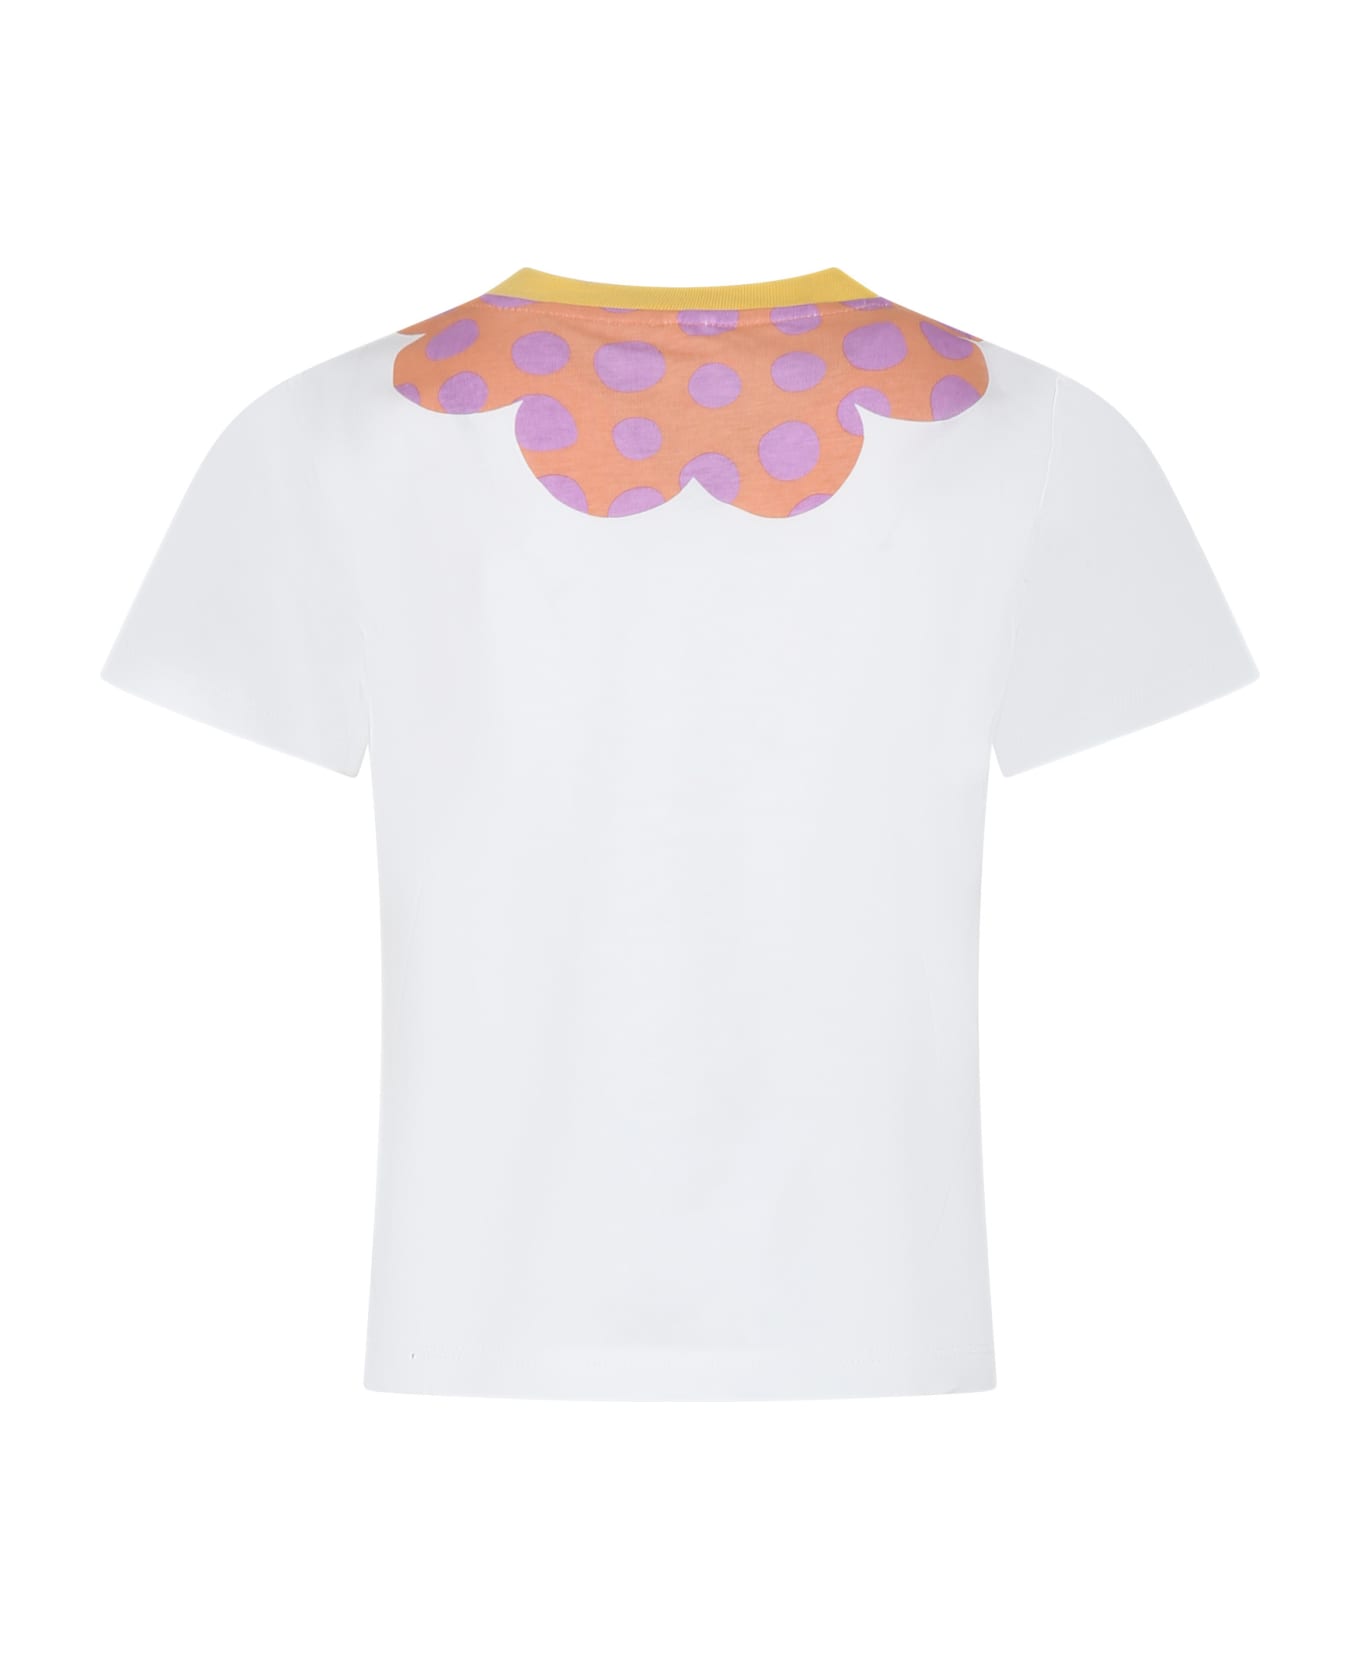 Stella McCartney Kids White T-shirt For Girl With Flower - White